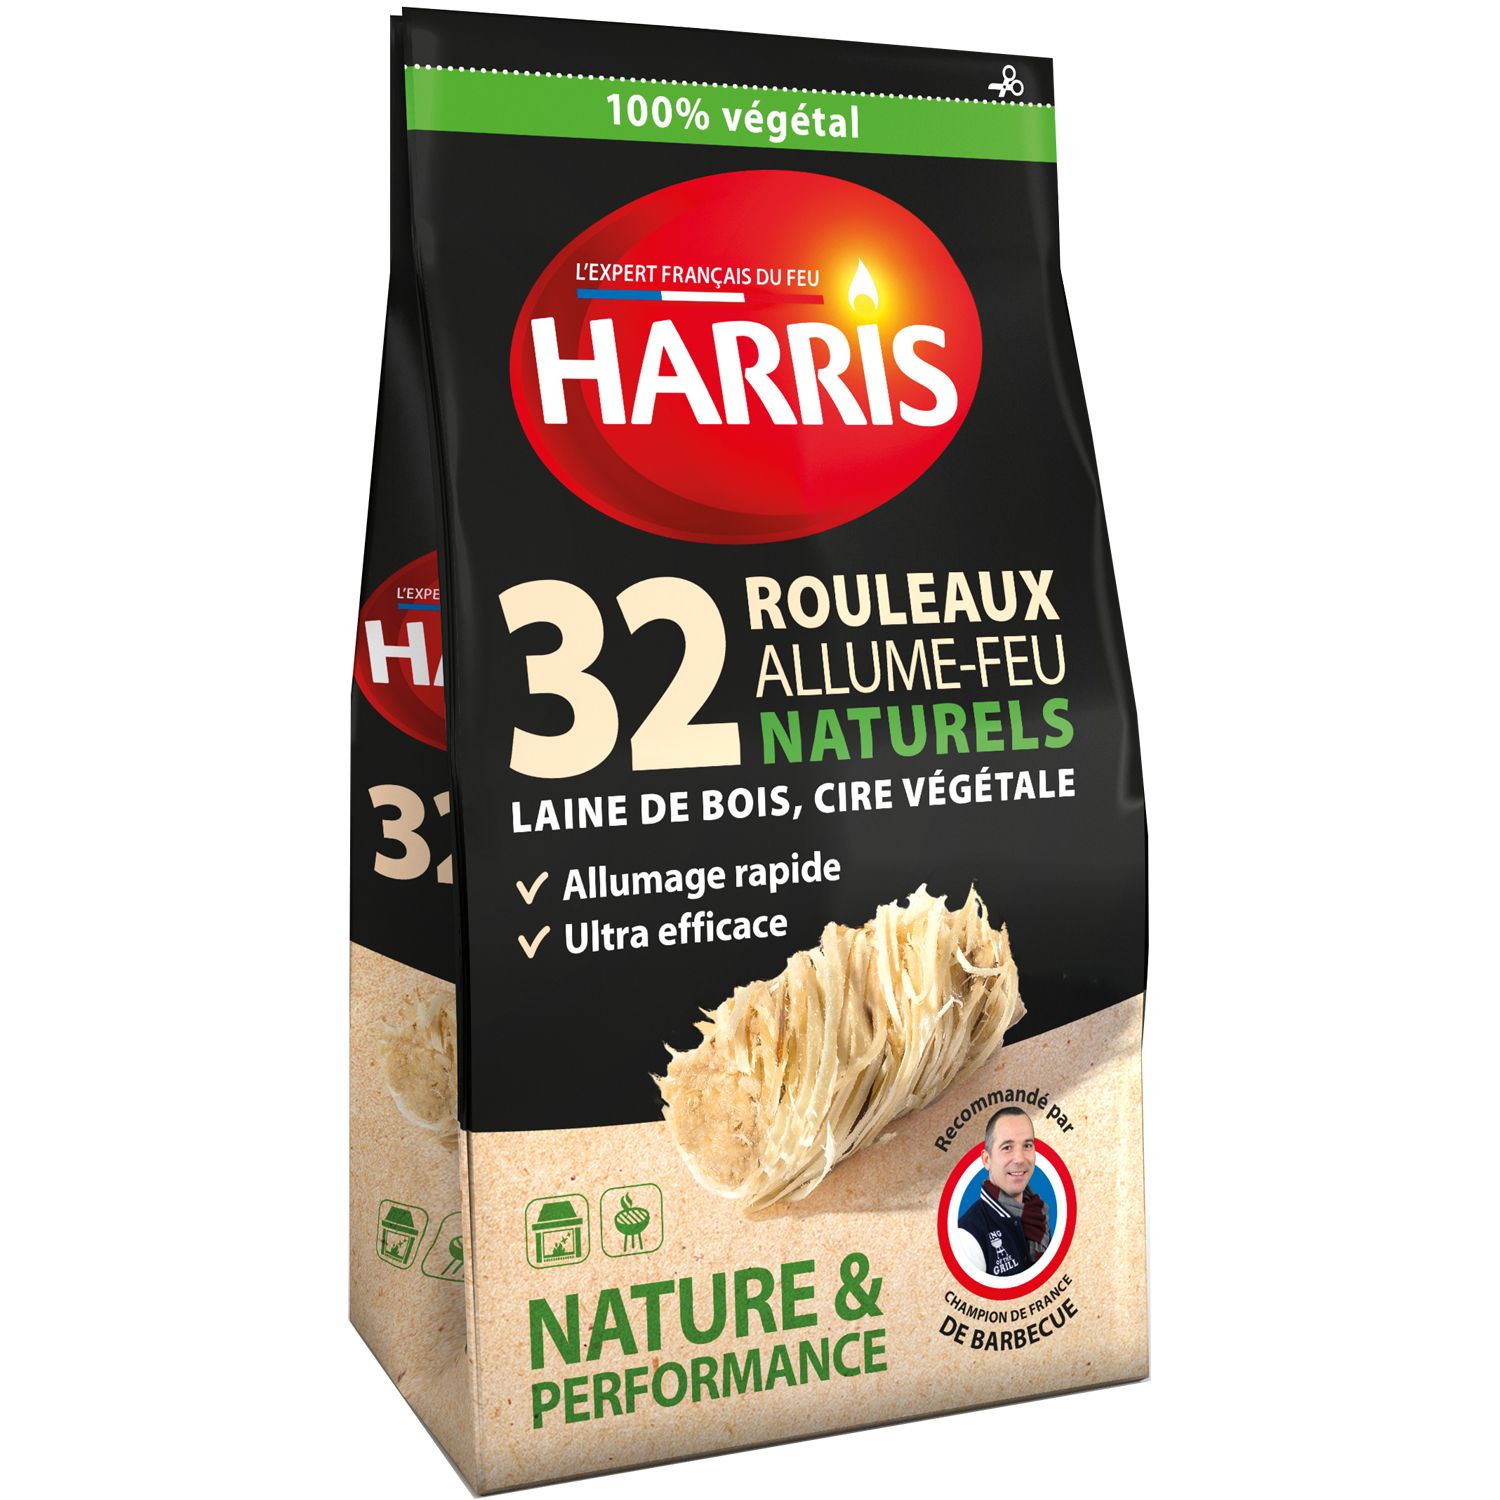 HARRIS Rouleaux allume-feu naturels 100% végétal 32 rouleaux pas cher 